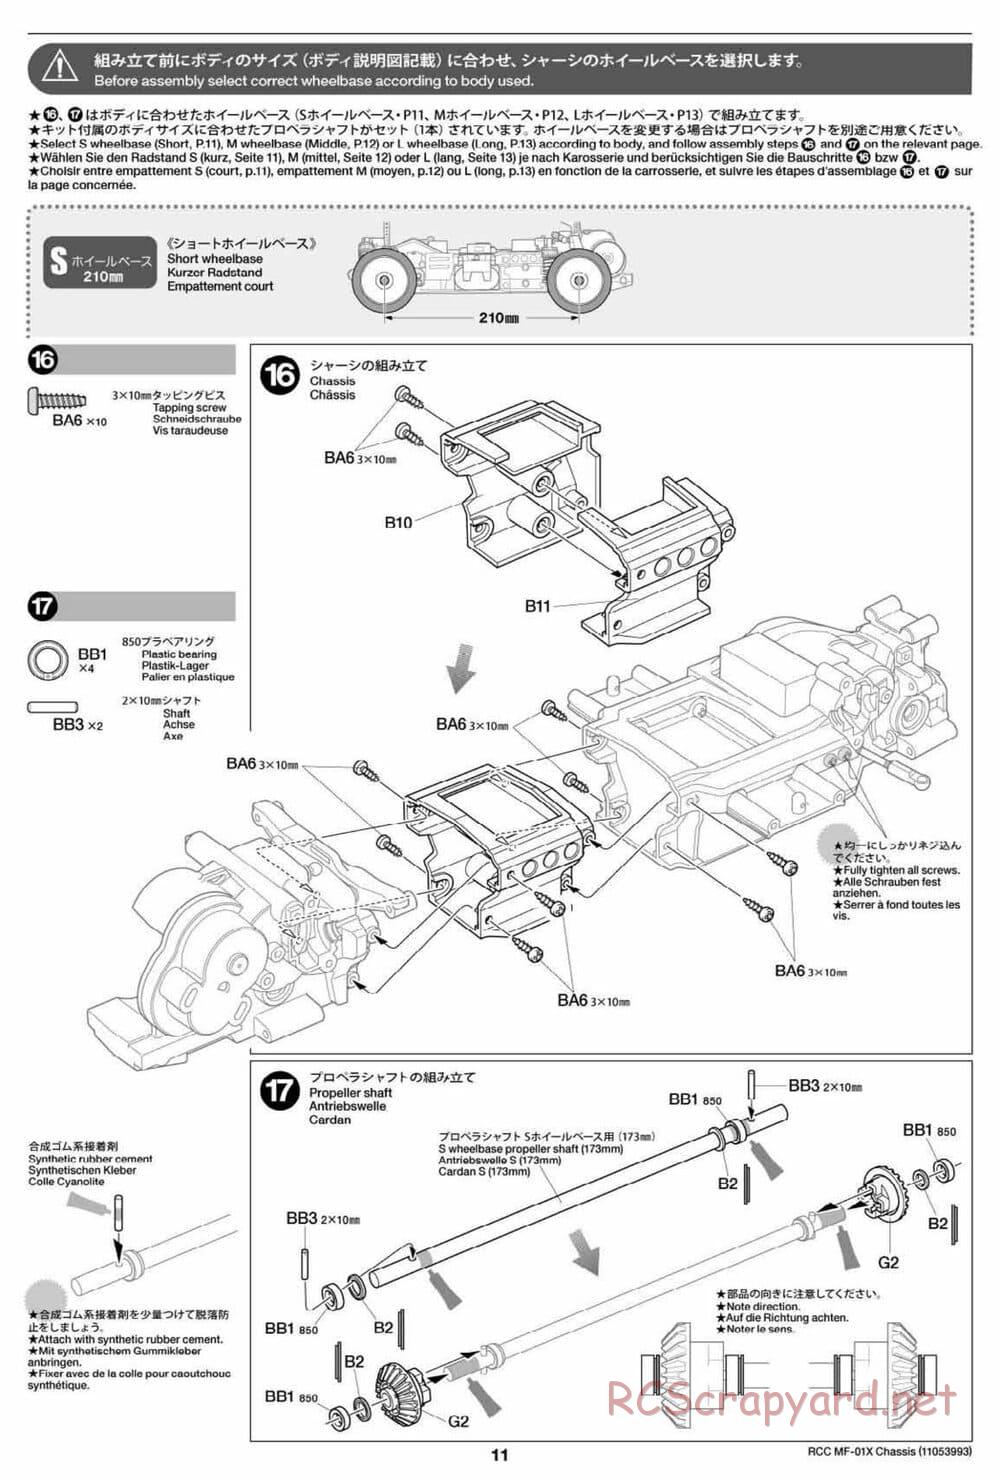 Tamiya - MF-01X Chassis - Manual - Page 11